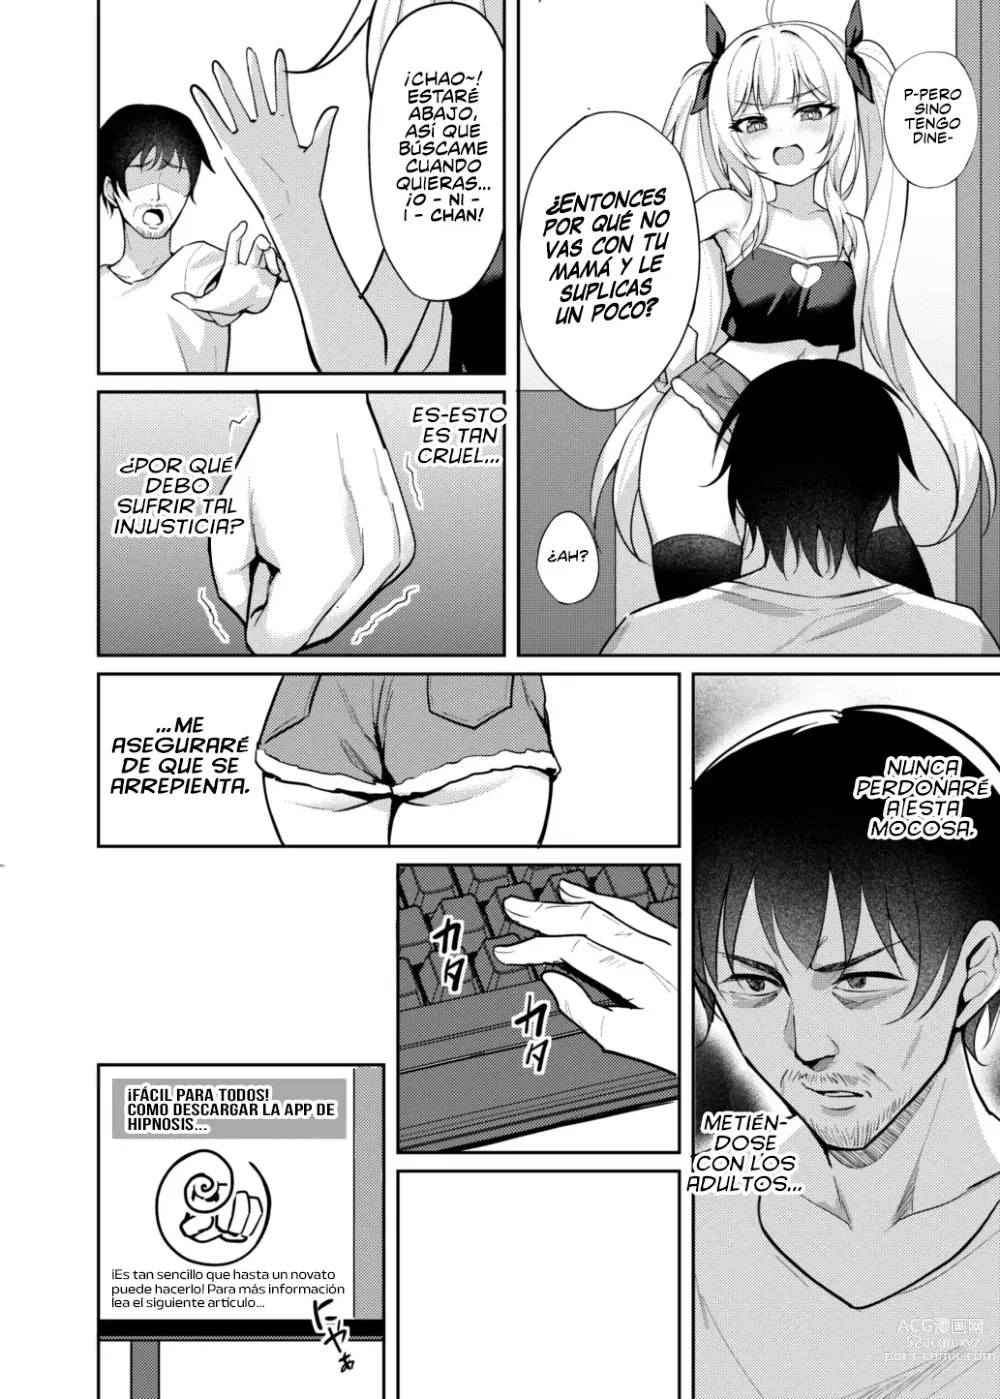 Page 7 of doujinshi Hipnotice a la Mocosa Para que Fuera una Puta Obediente